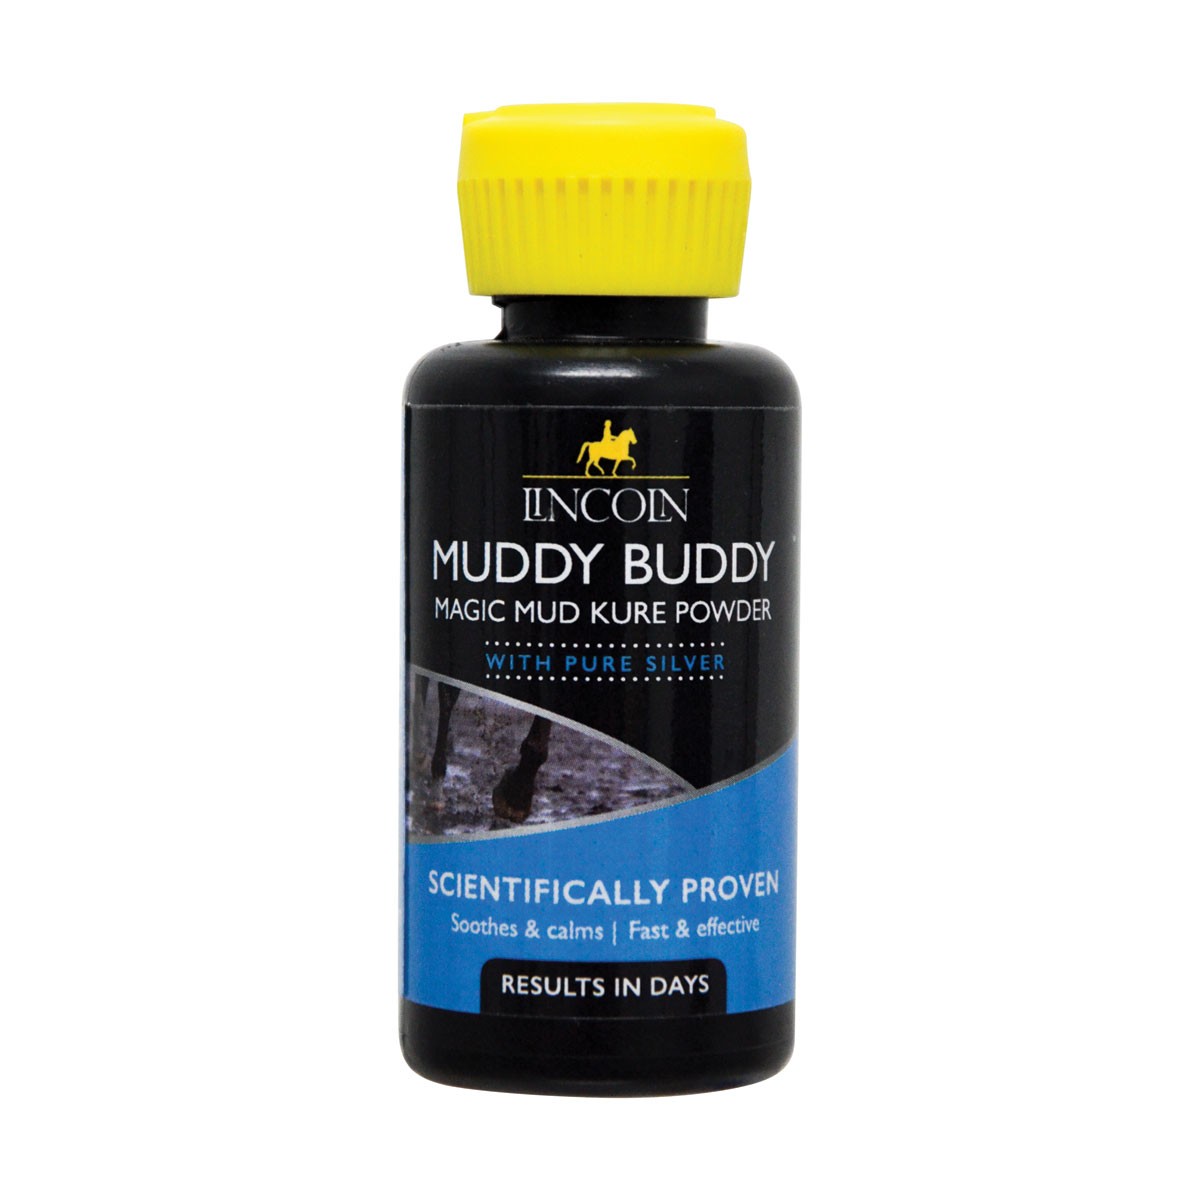 Lincoln Muddy Buddy Magic Mud Kure Powder